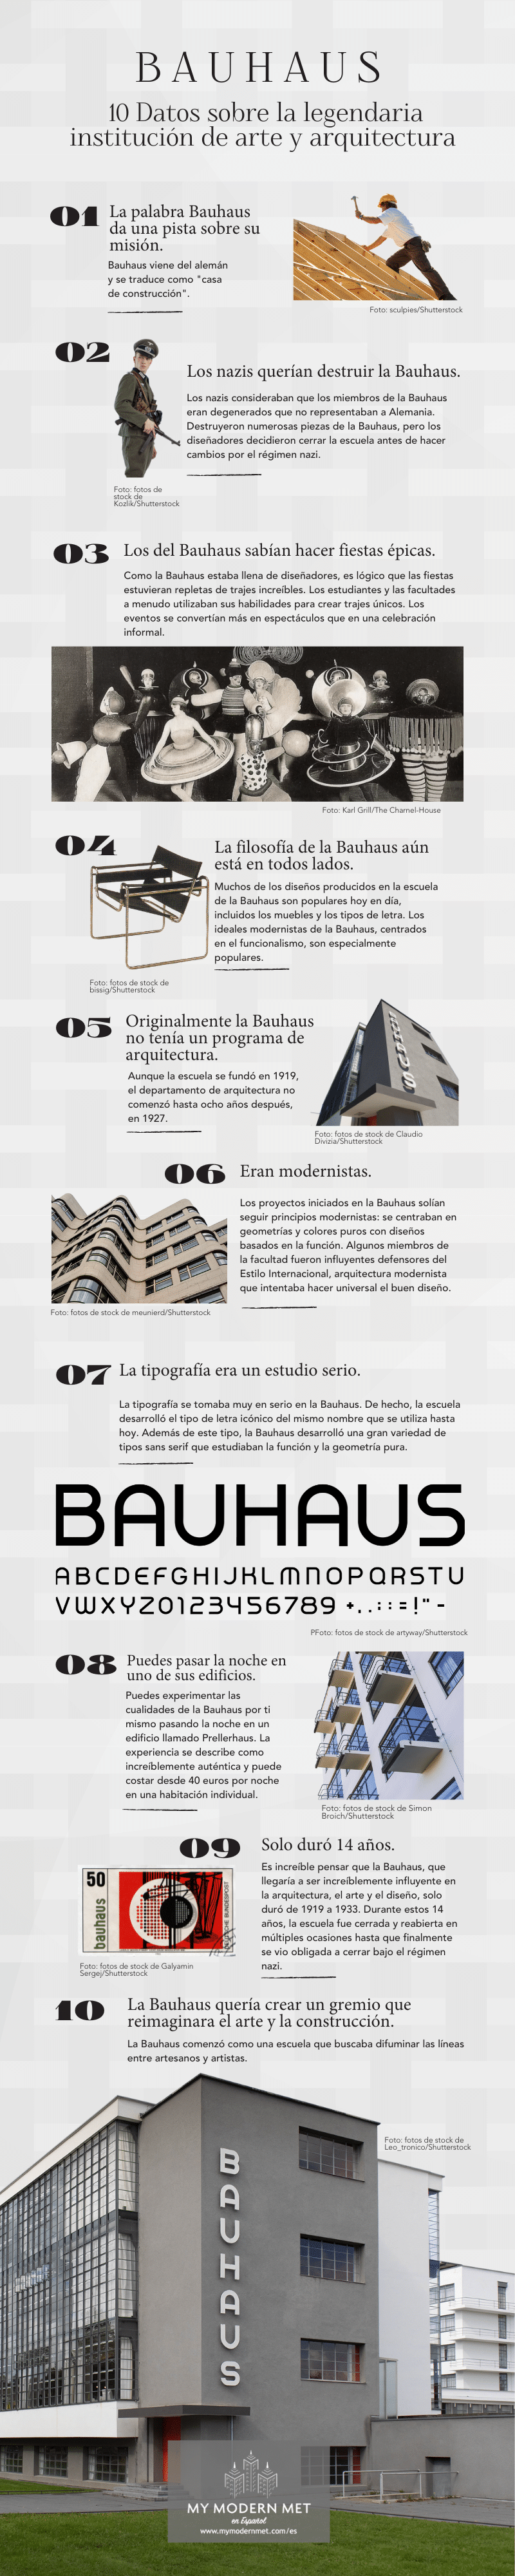 Infografía con 10 datos sobre la Bauhaus